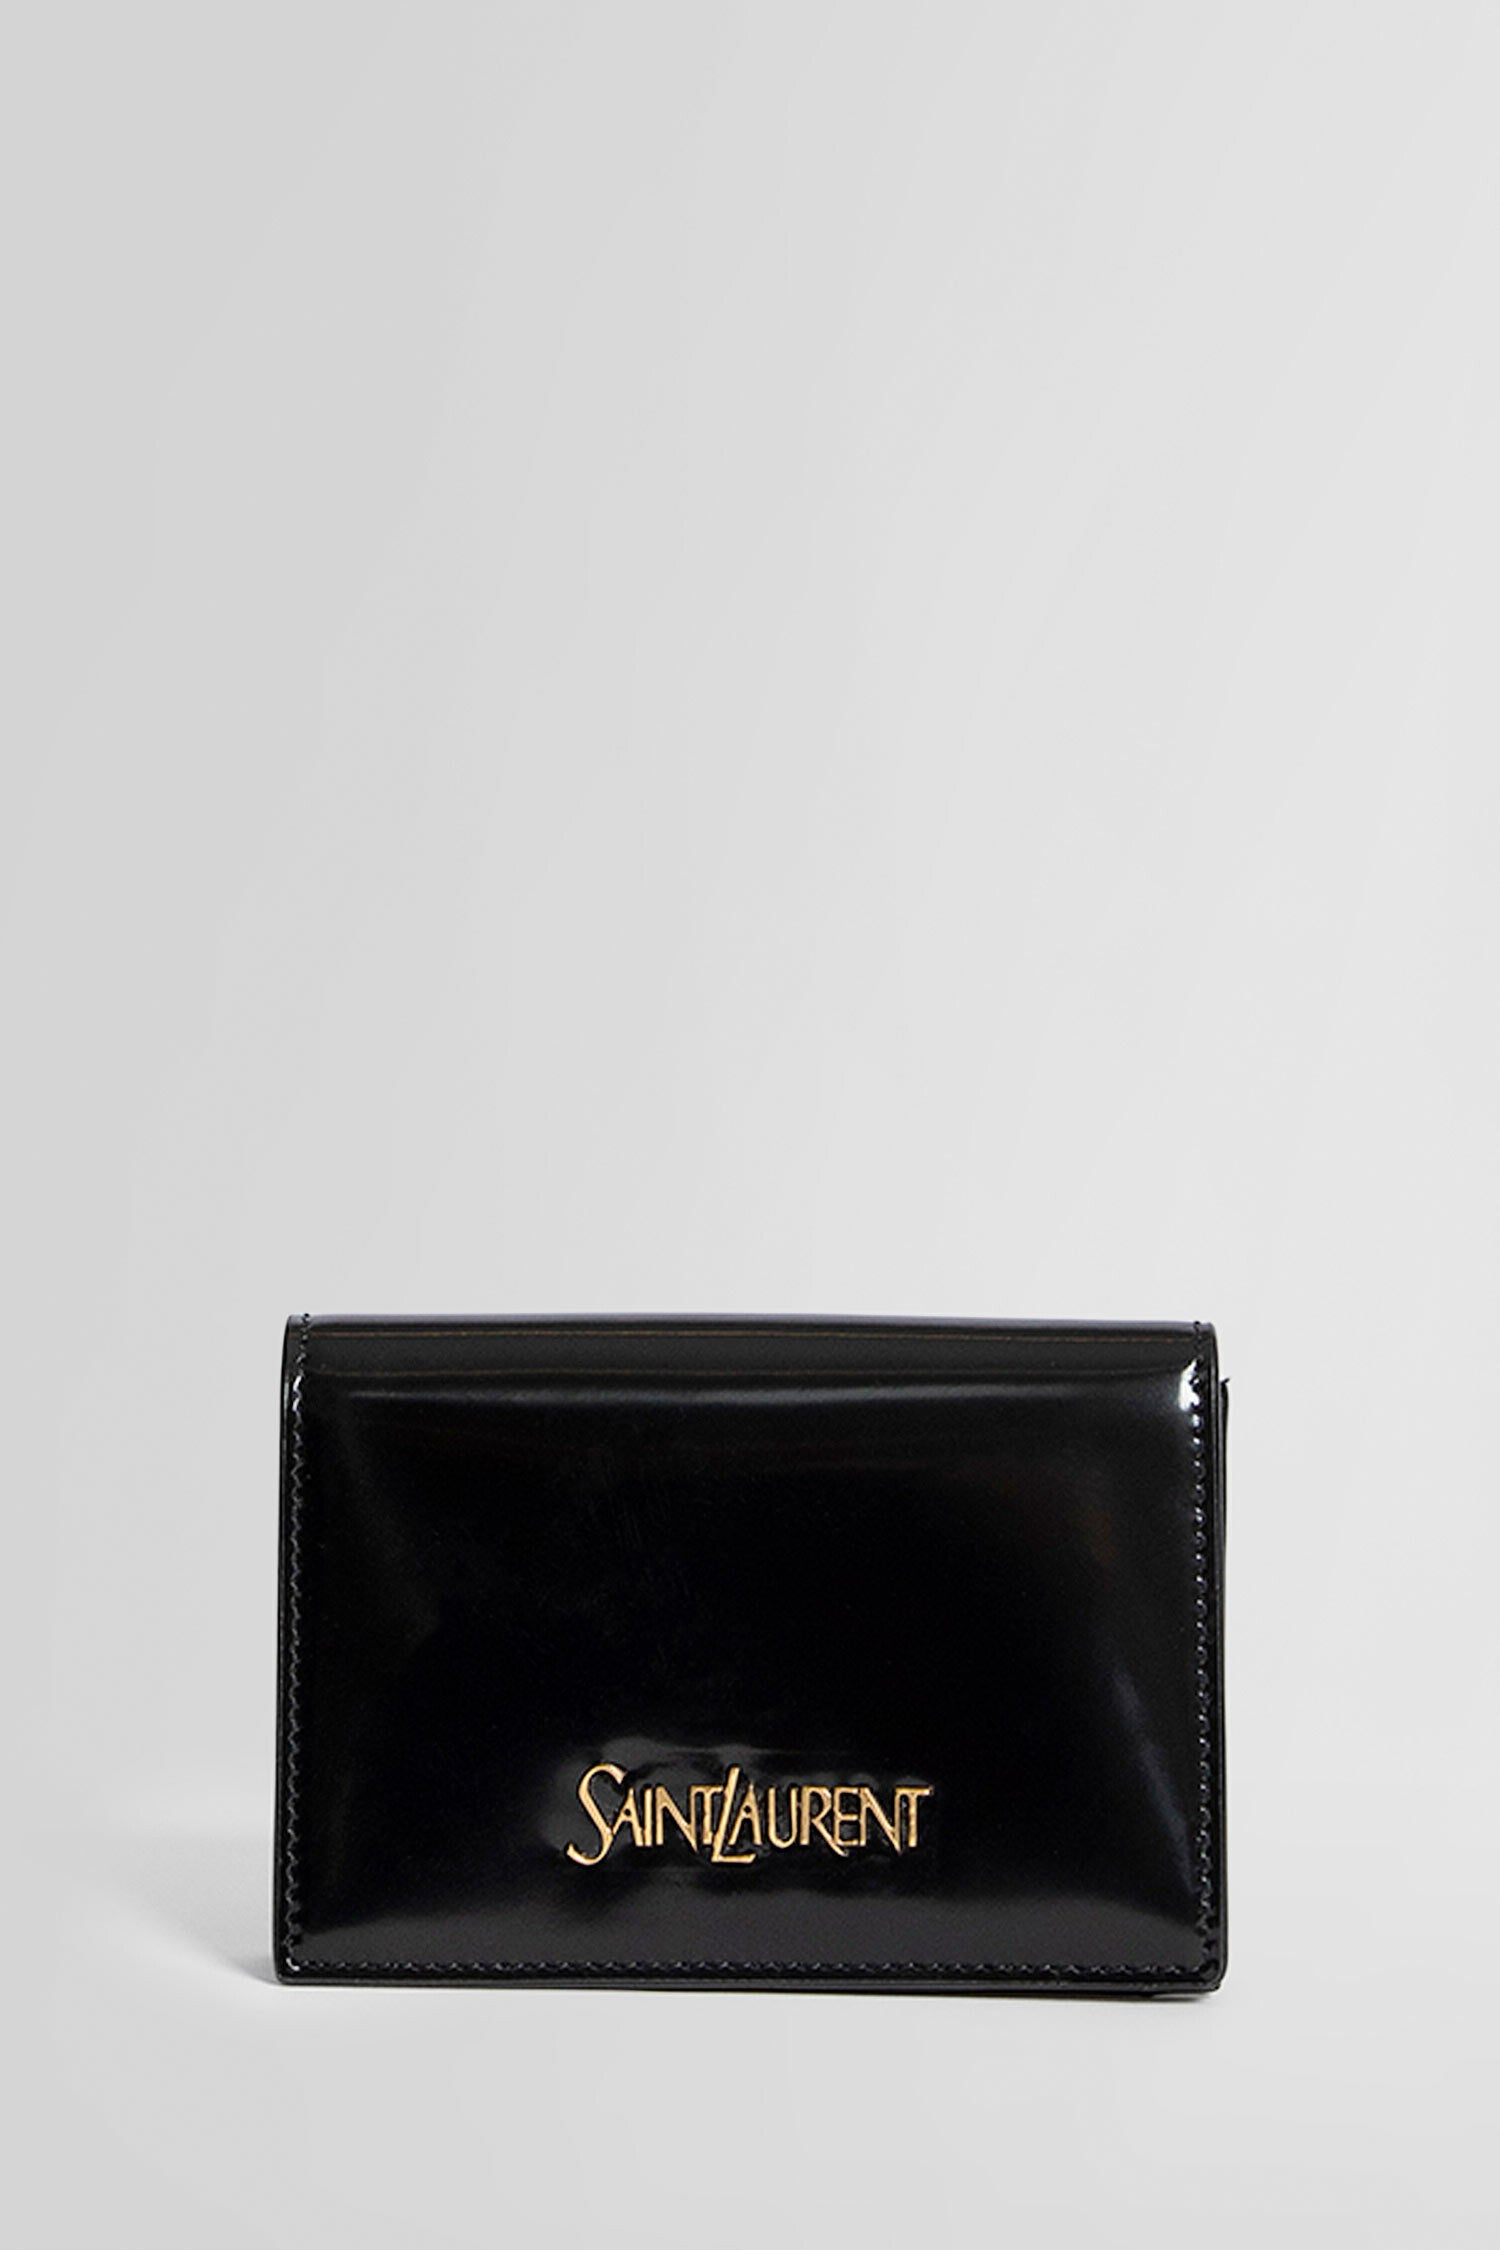 Saint Laurent Wallets & Card Cases for Women